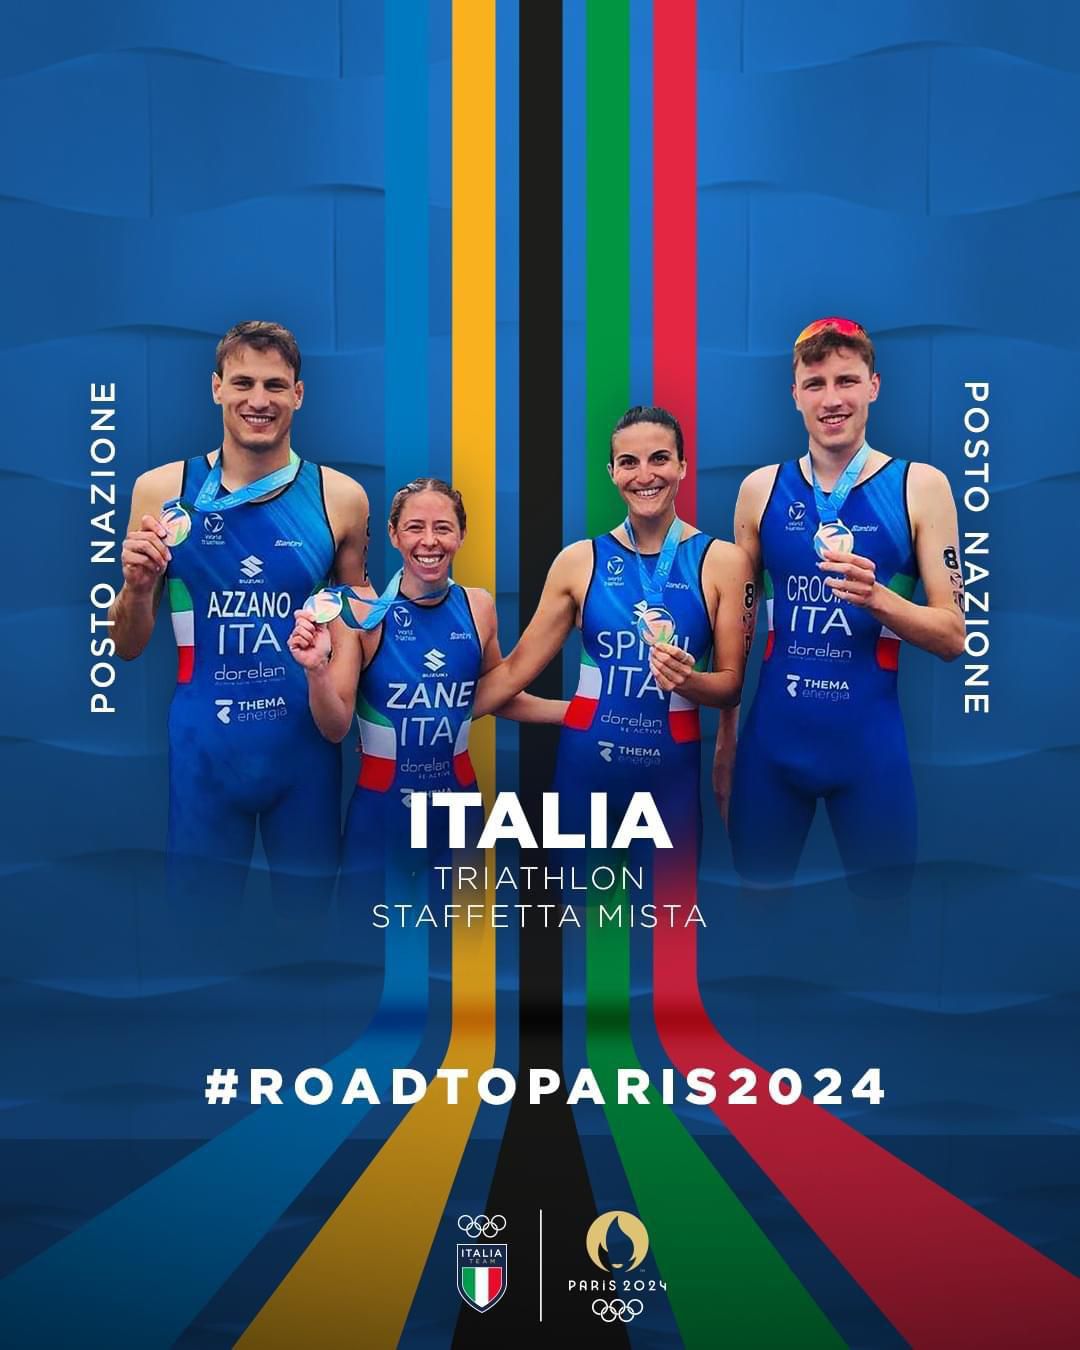 L'Italia del triathlon non si ferma: dopo la qualificazione diretta della staffetta a Parigi 2024 ora punta al terzo pass olimpico femminile